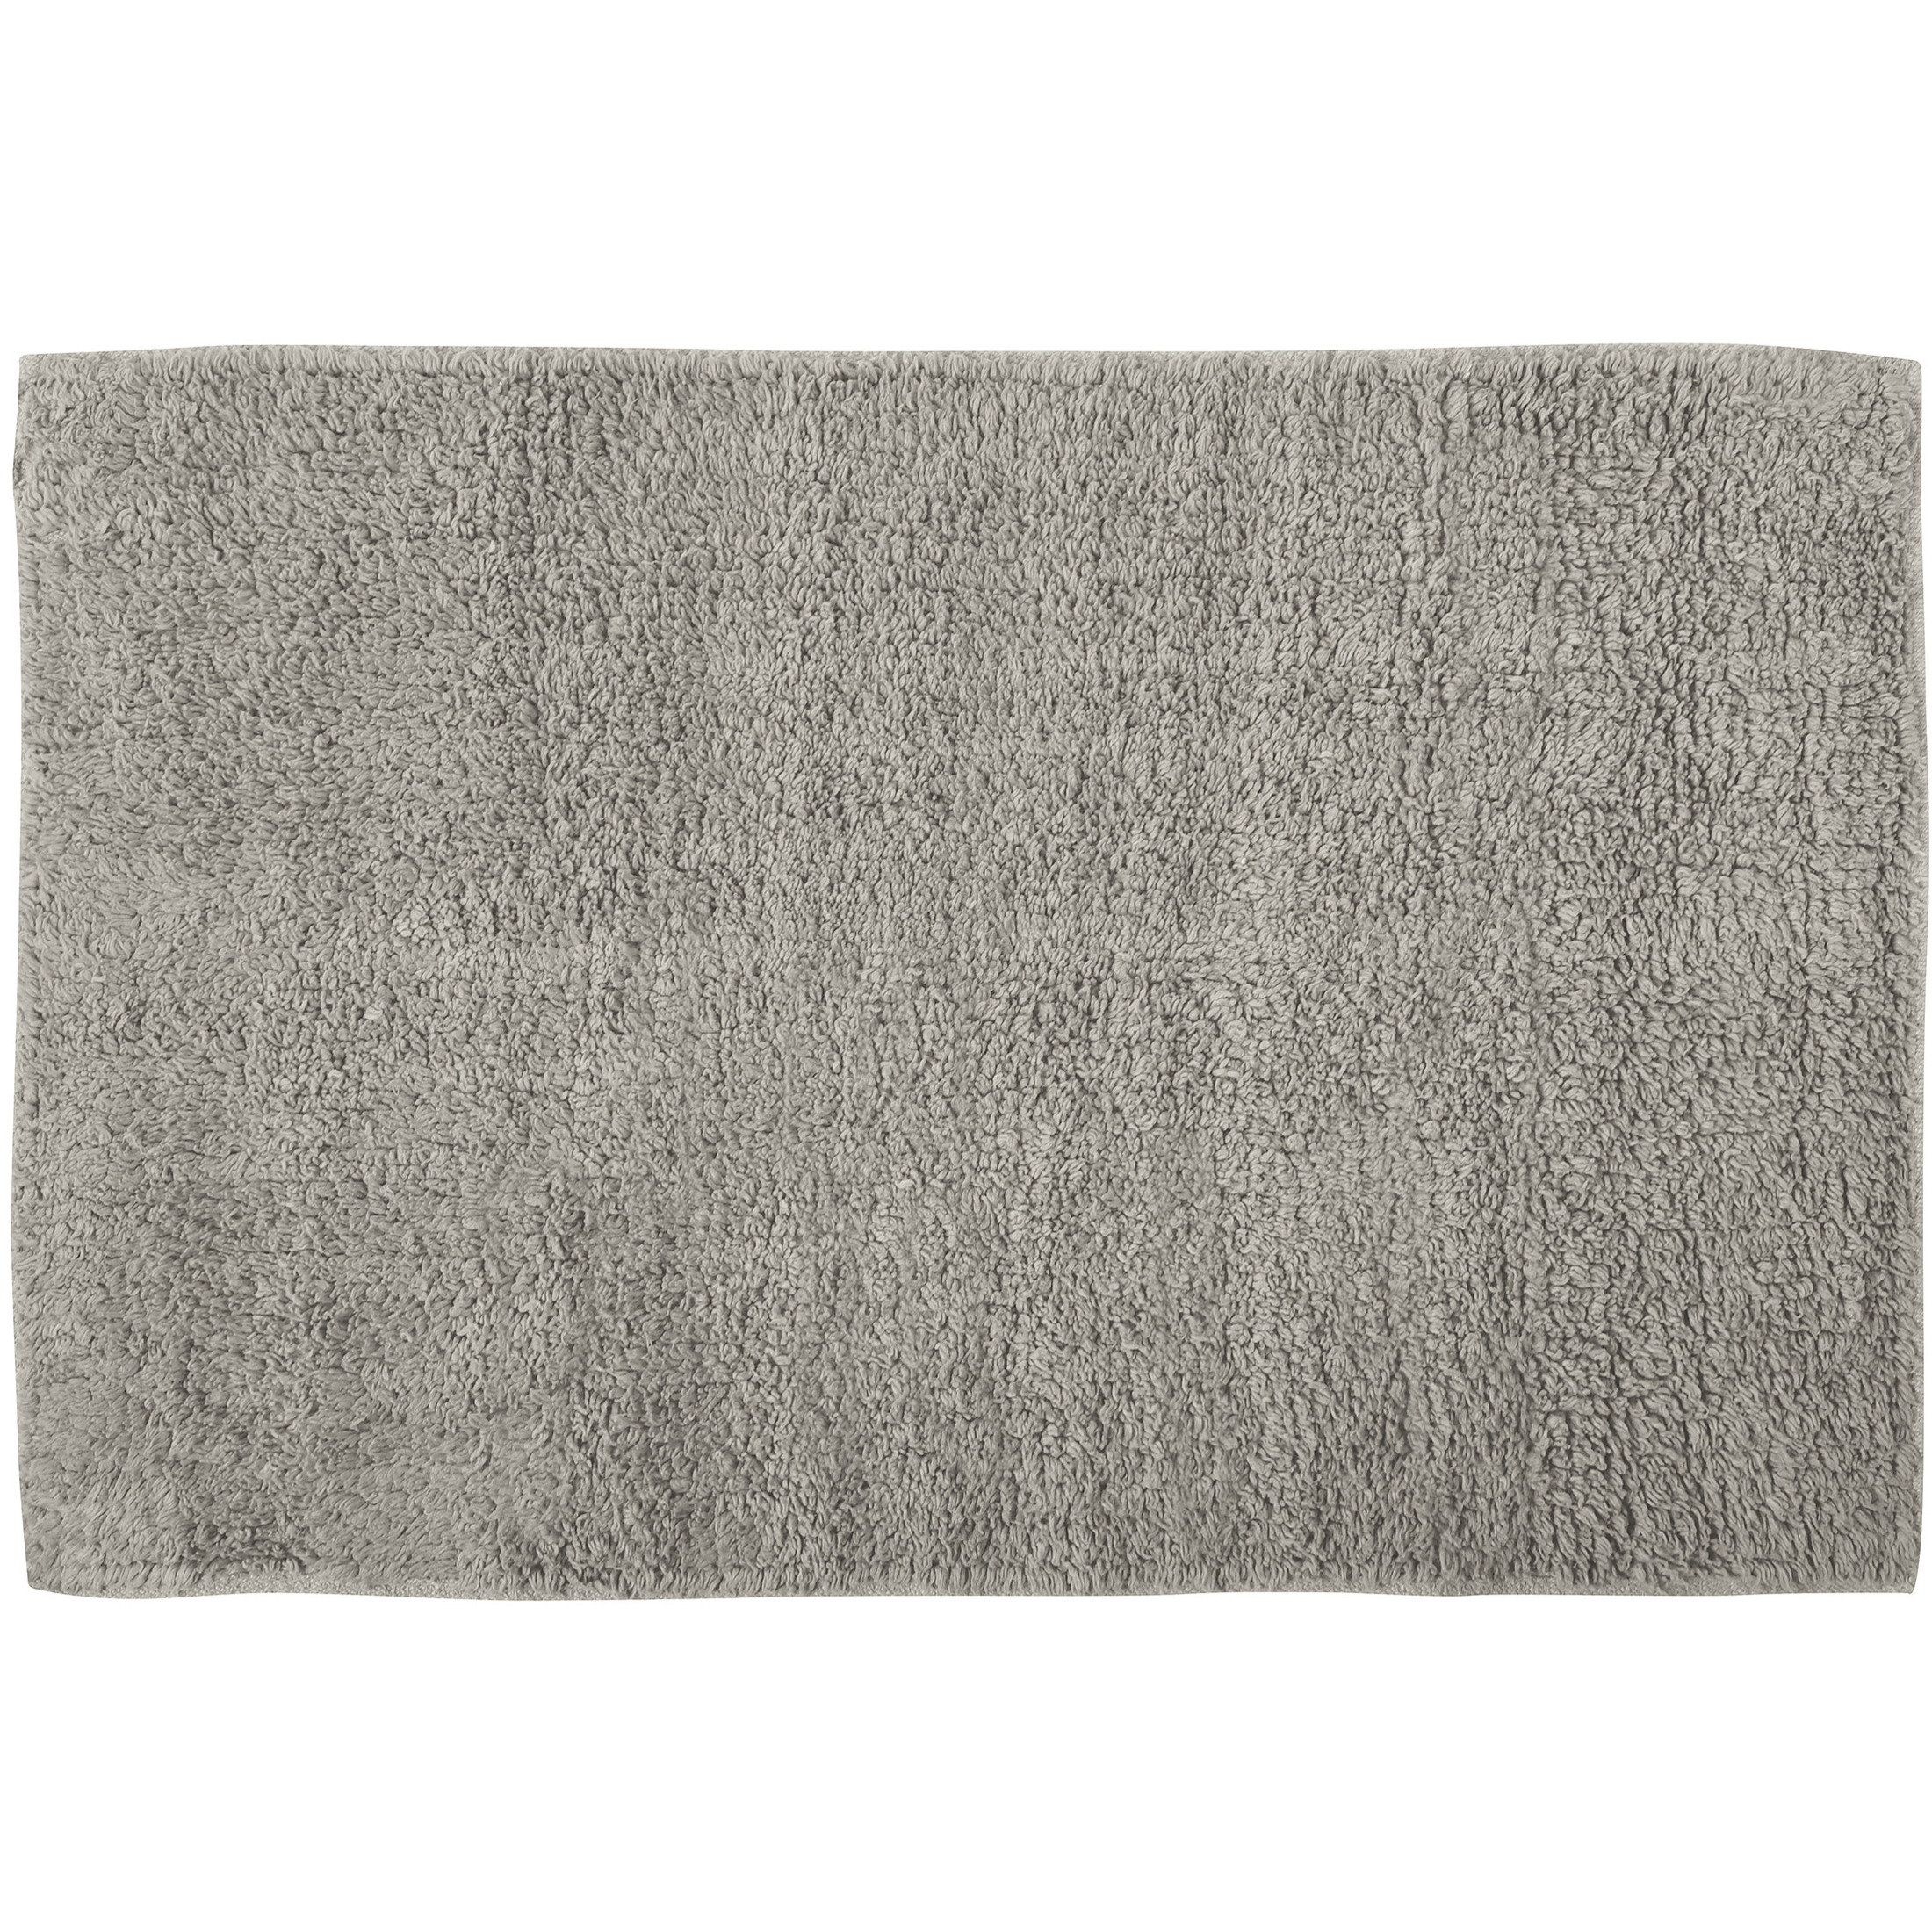 Badkamerkleedje-badmat tapijtje voor op de vloer beige 40 x 60 cm